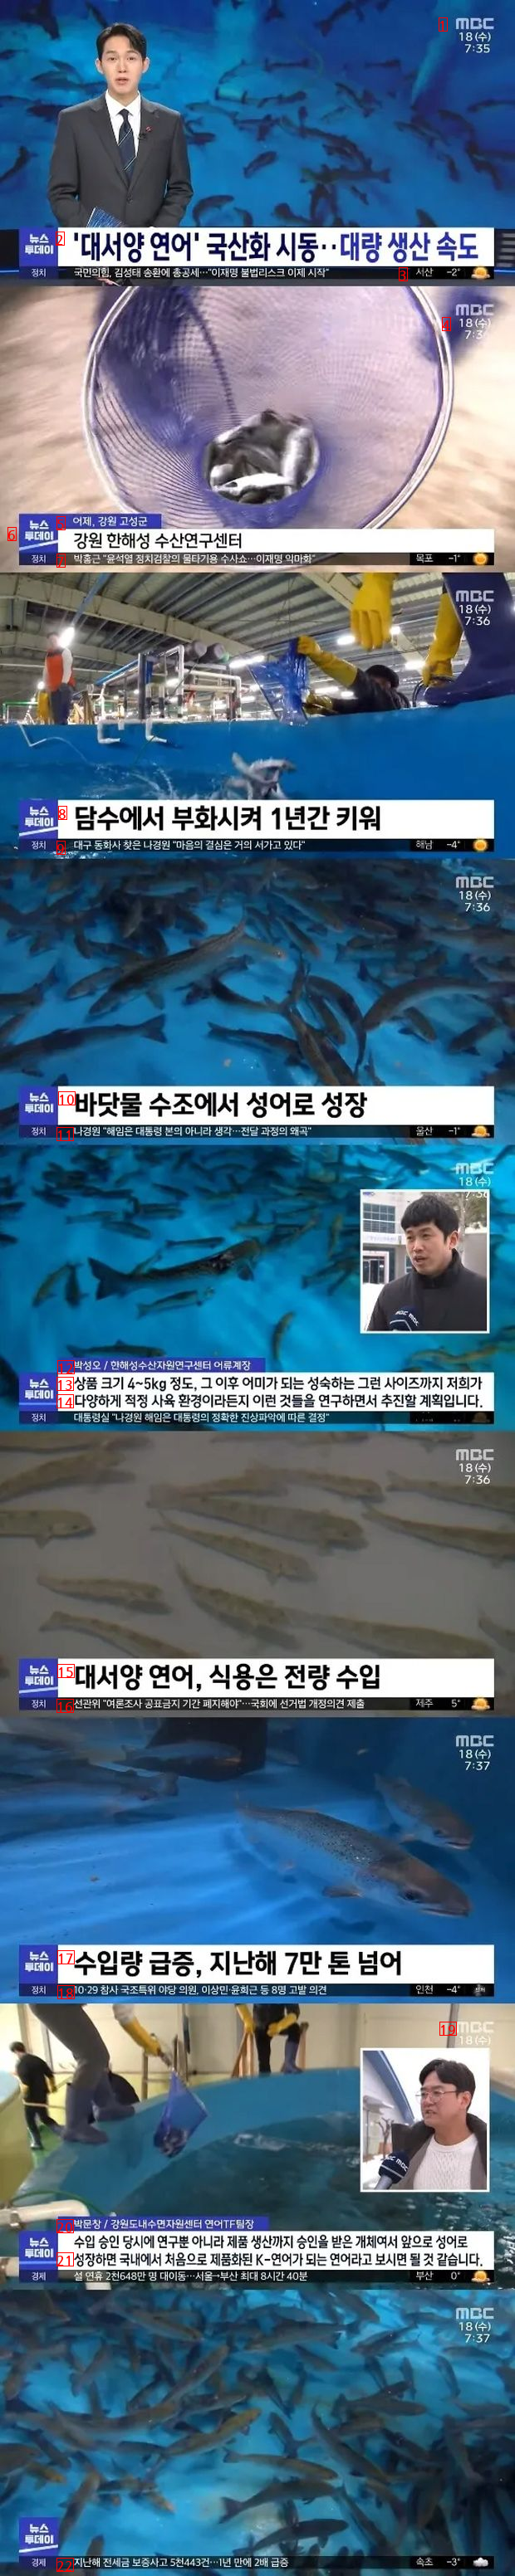 鮭の国産化のニュース